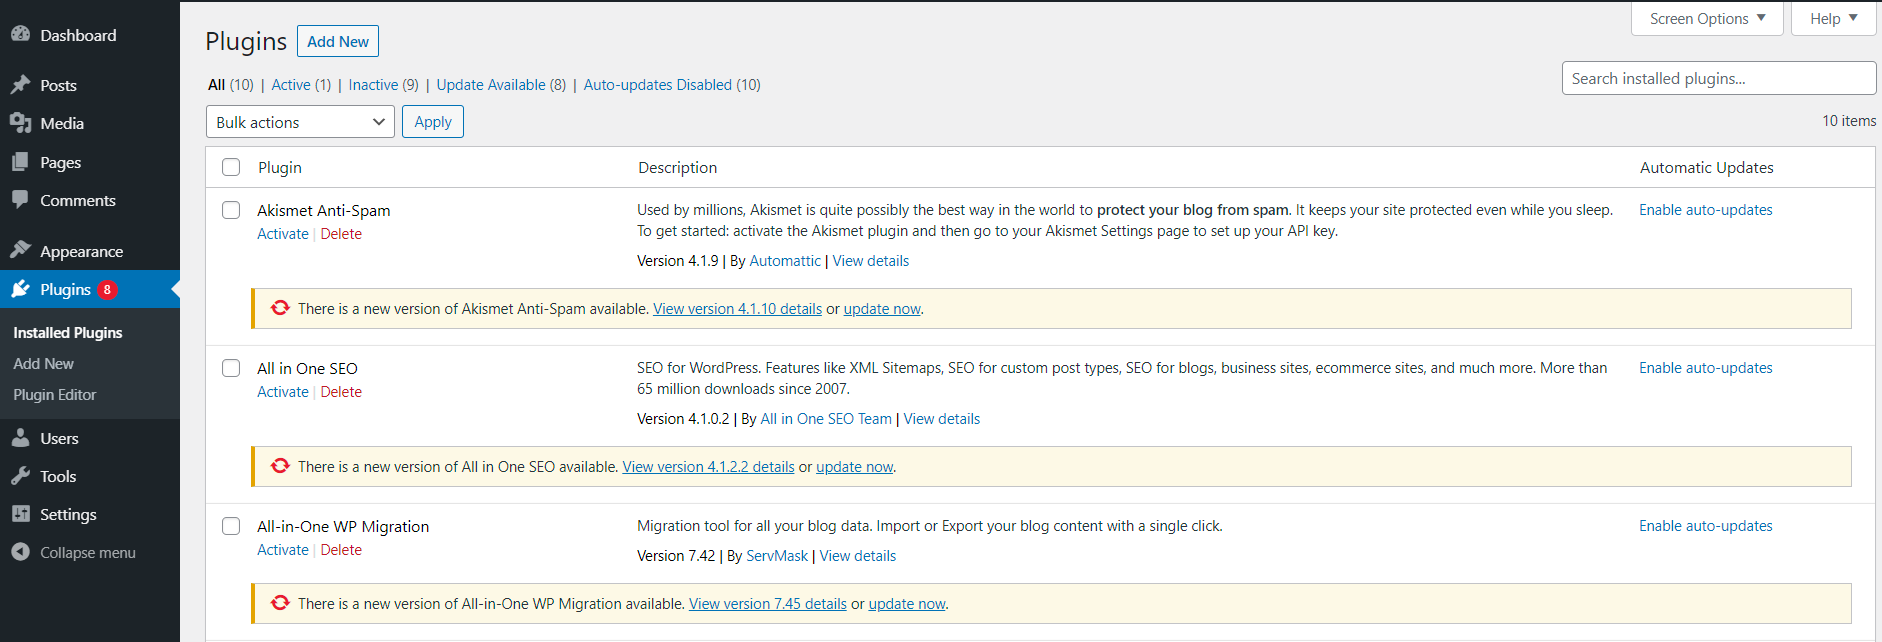 Plugins in the WordPress admin dashboard